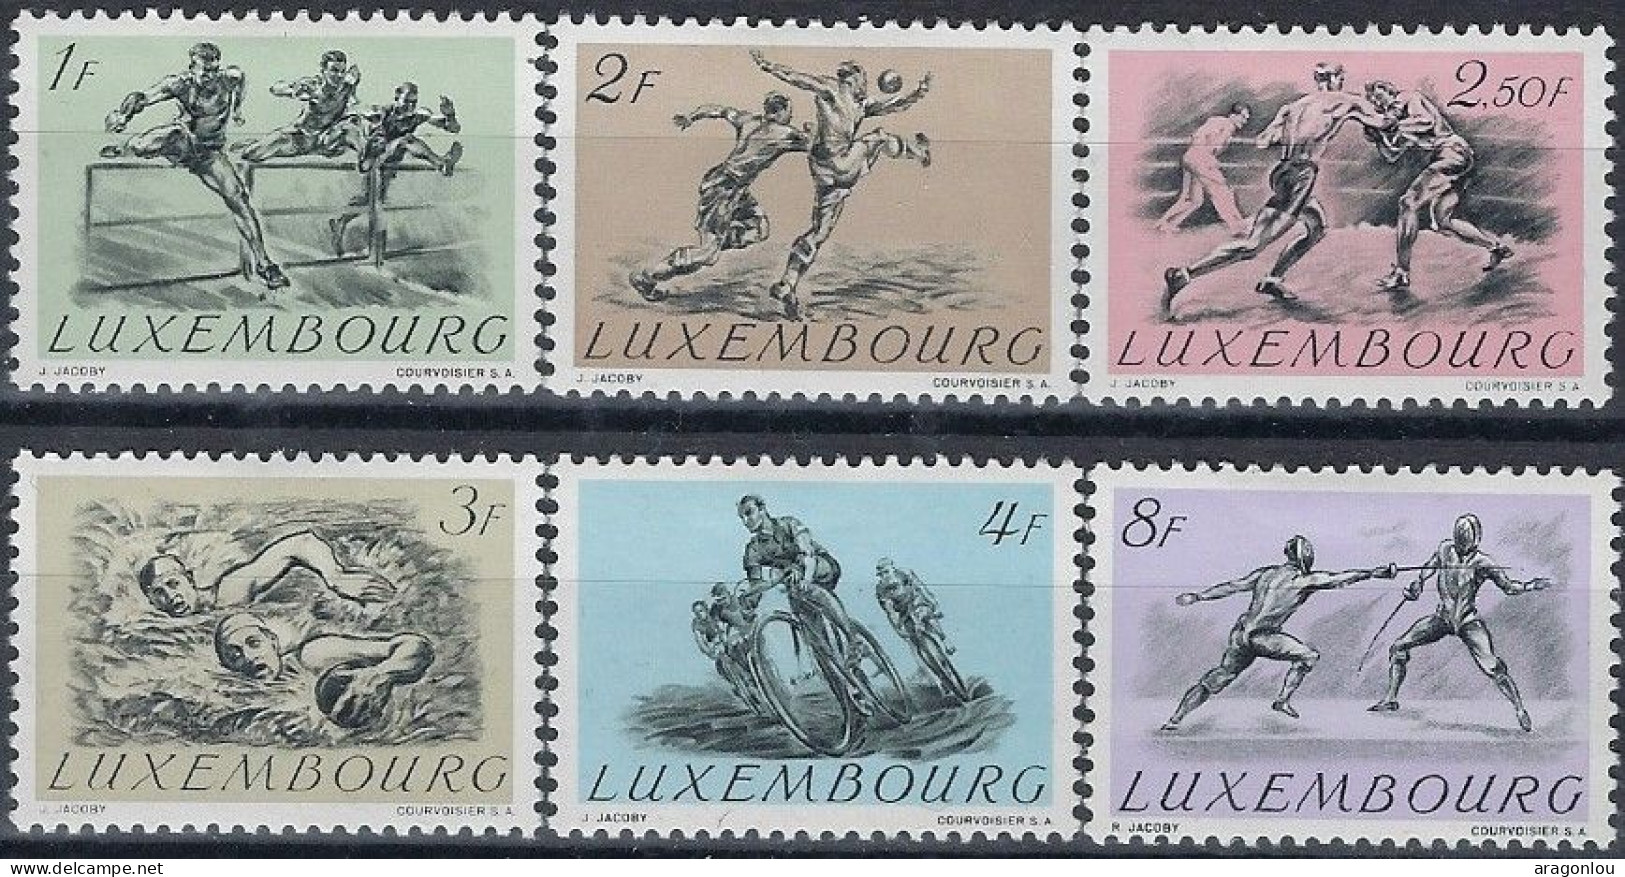 Luxembourg - Luxemburg -  Timbre   Série  Olympique   1952   VC. 50,-   * - Oblitérés